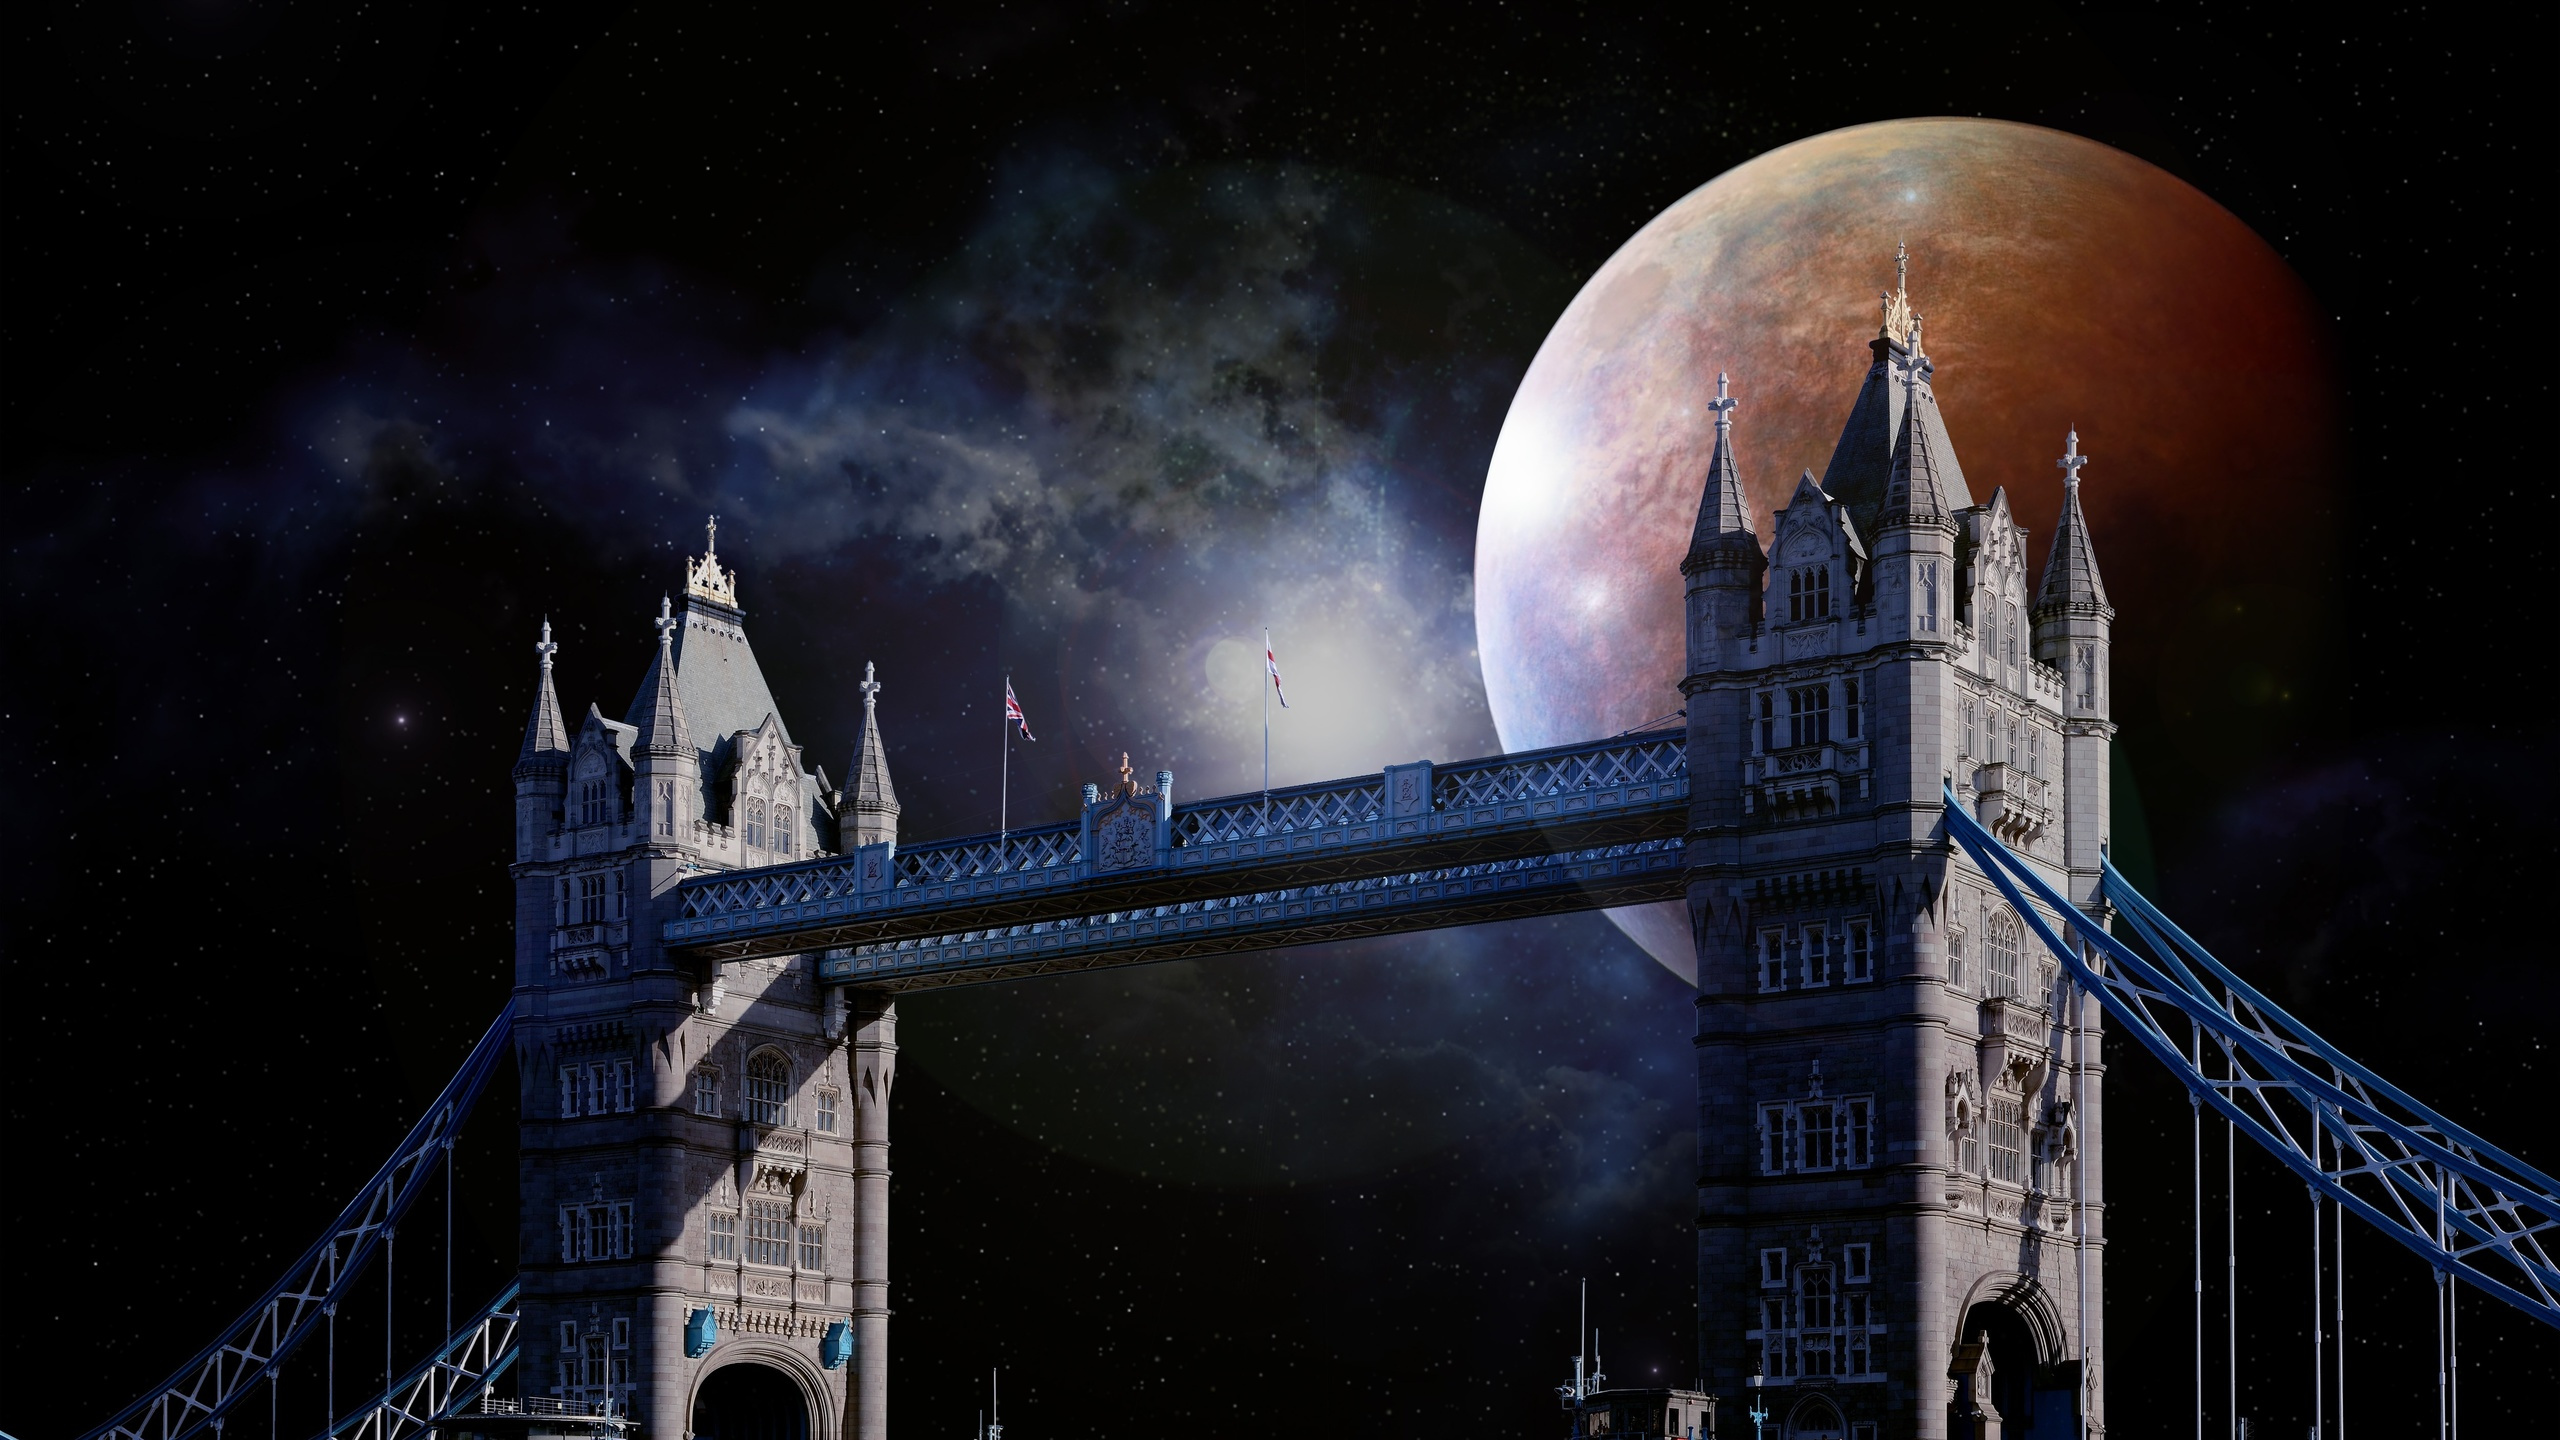 塔桥, 伦敦塔, 伦敦桥, 建筑, 天空 壁纸 2560x1440 允许